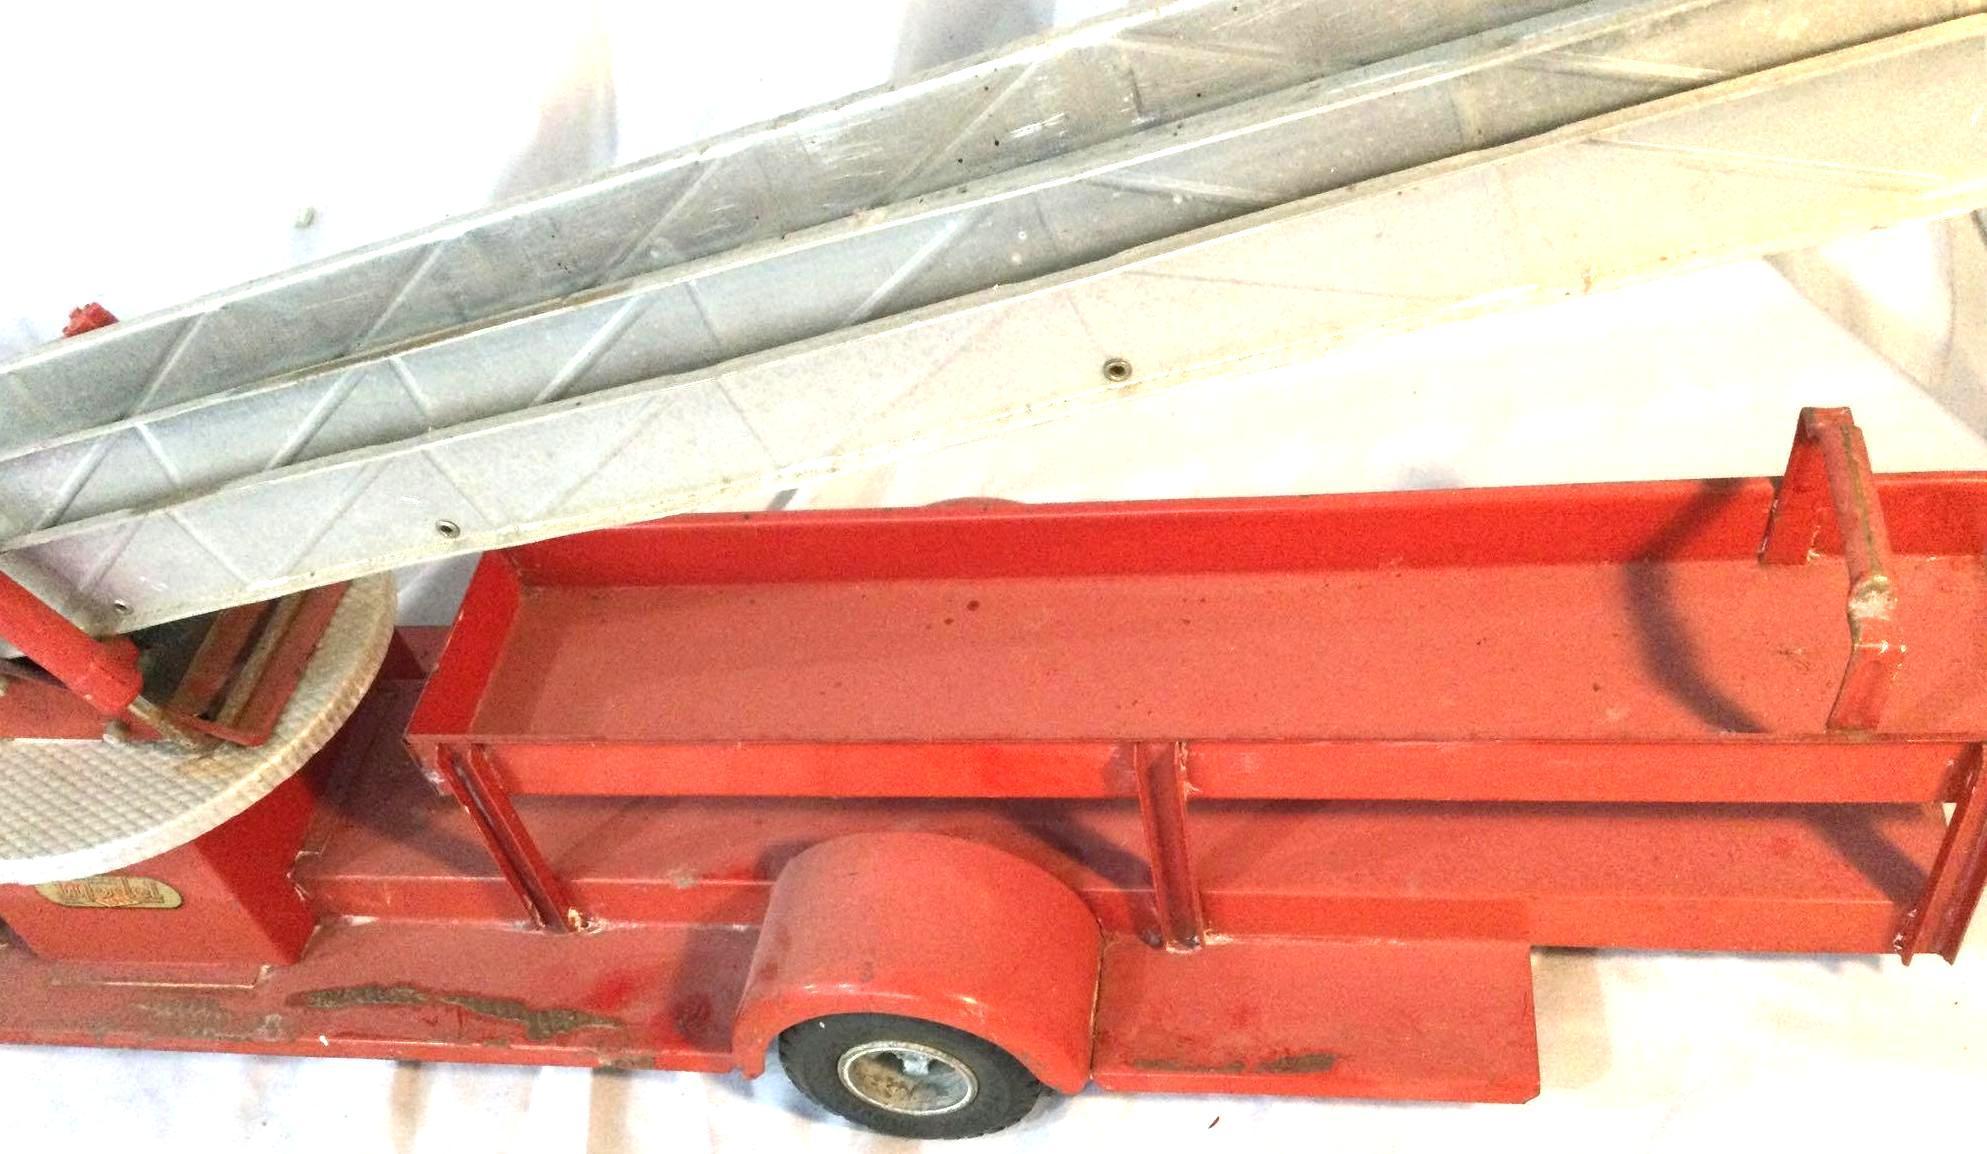 Doepke Model Toys Rossmoyne Fire Truck With Ladder